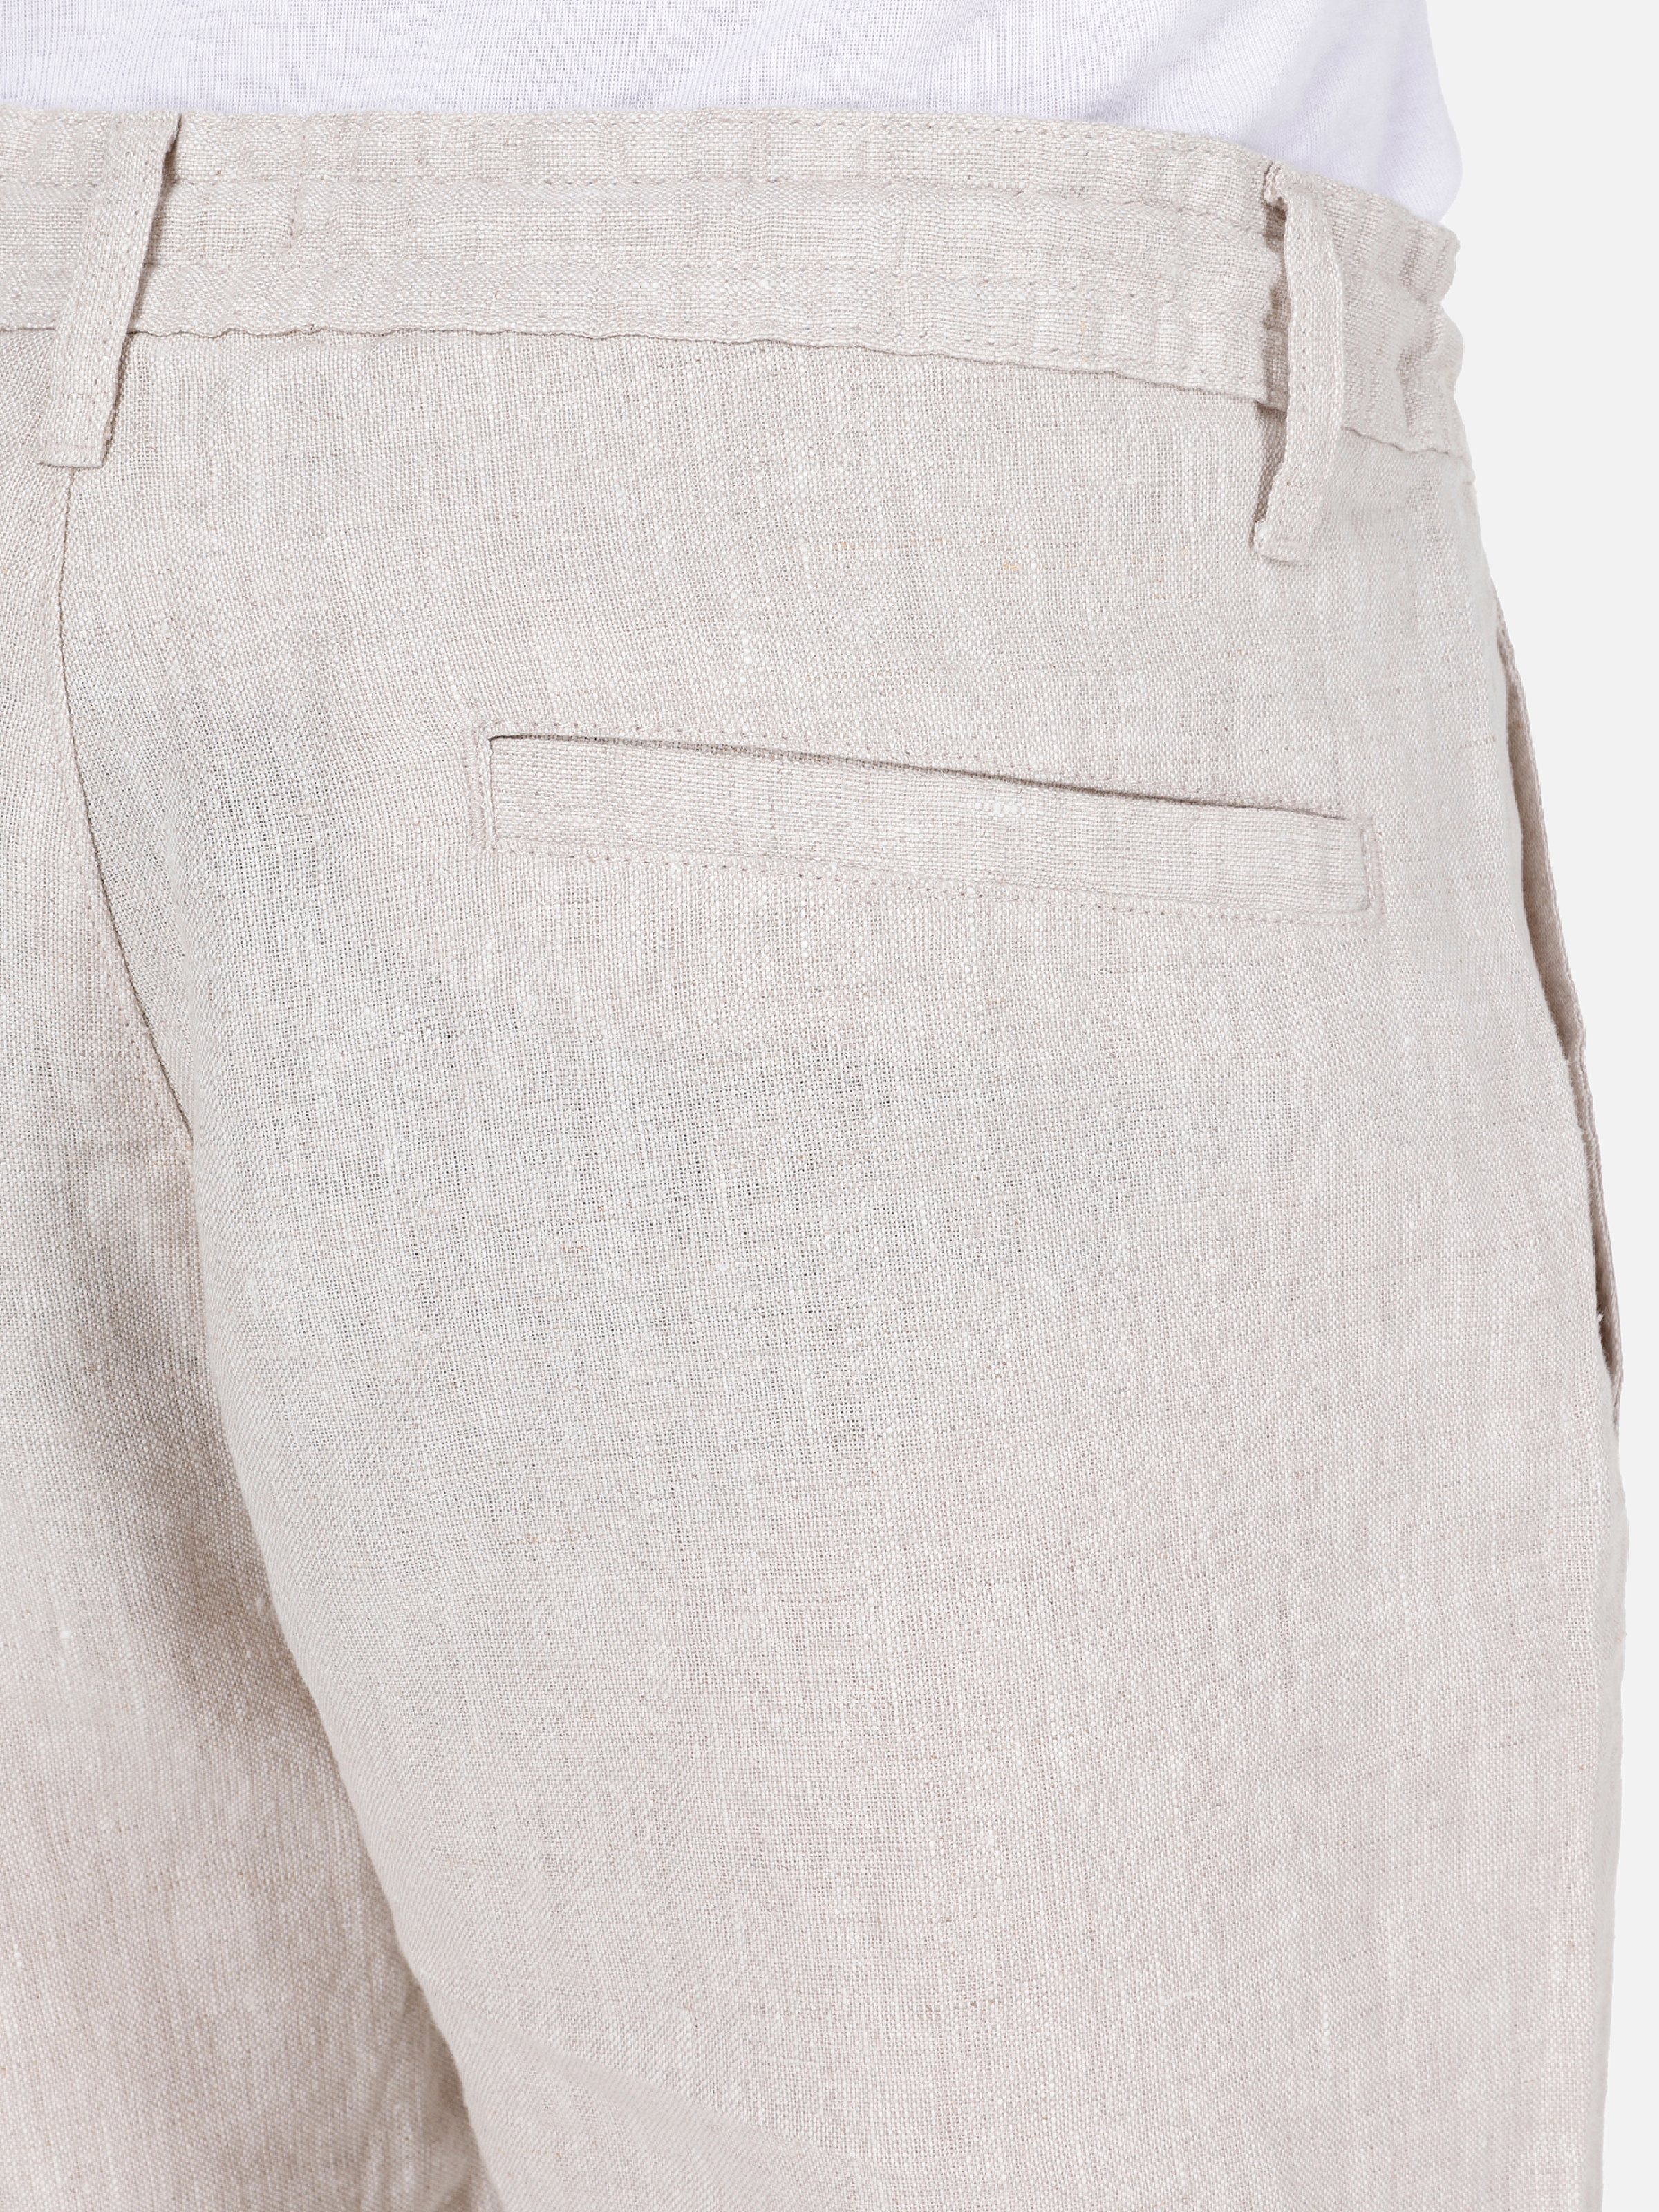 Afișați detalii pentru Short / Pantaloni Scurti De Barbati Alb Regular Fit  